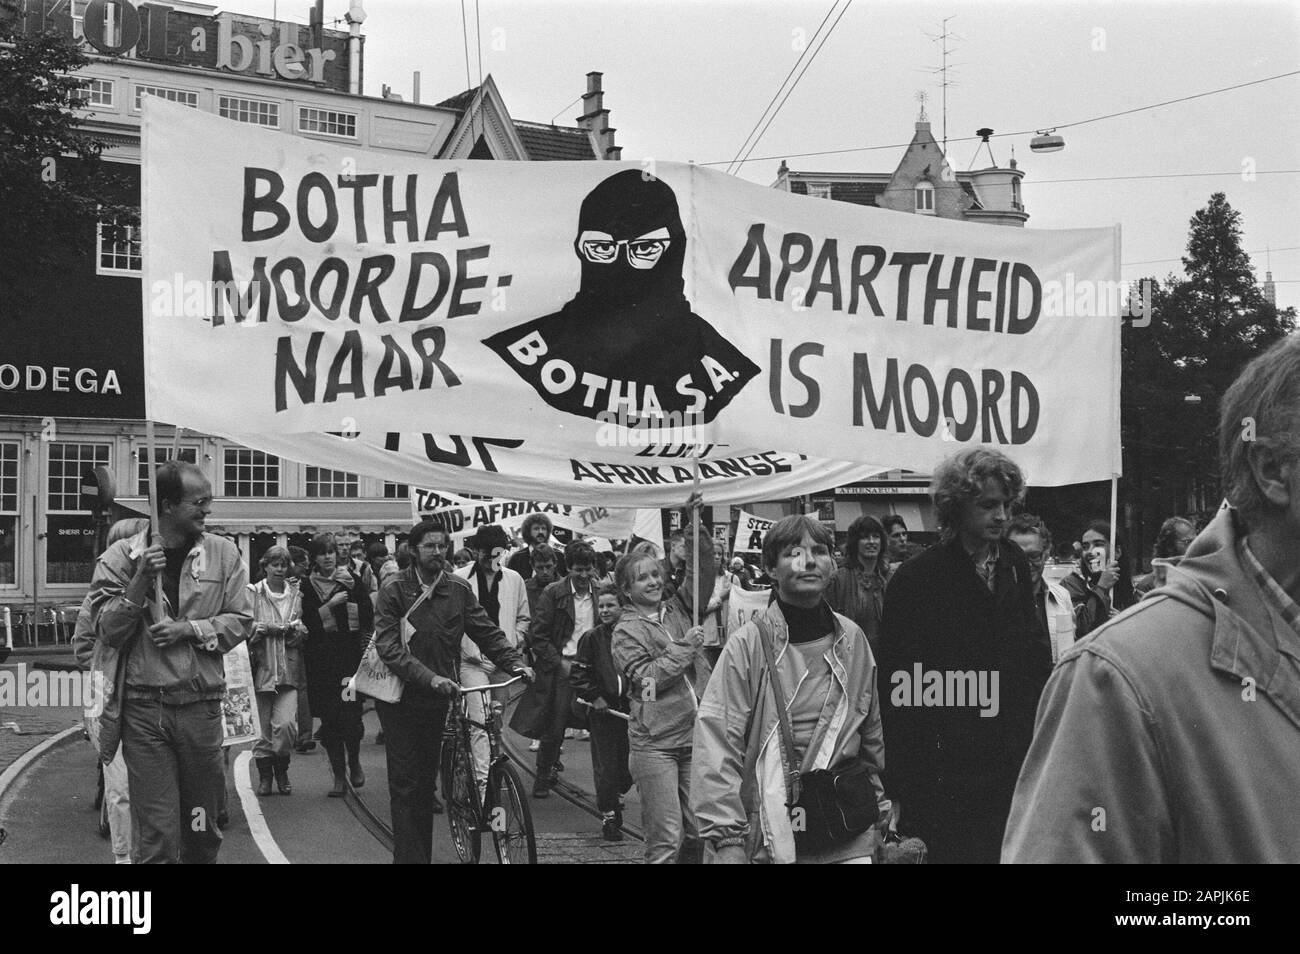 Demonstration gegen das Apartheid-Südafrika in Amsterdam; Banner mit Apartheid ist Morddatum: 8. september 1984 Ort: Amsterdam, Noord-Holland Schlüsselwörter: Demonstrationen, Banner Stockfoto